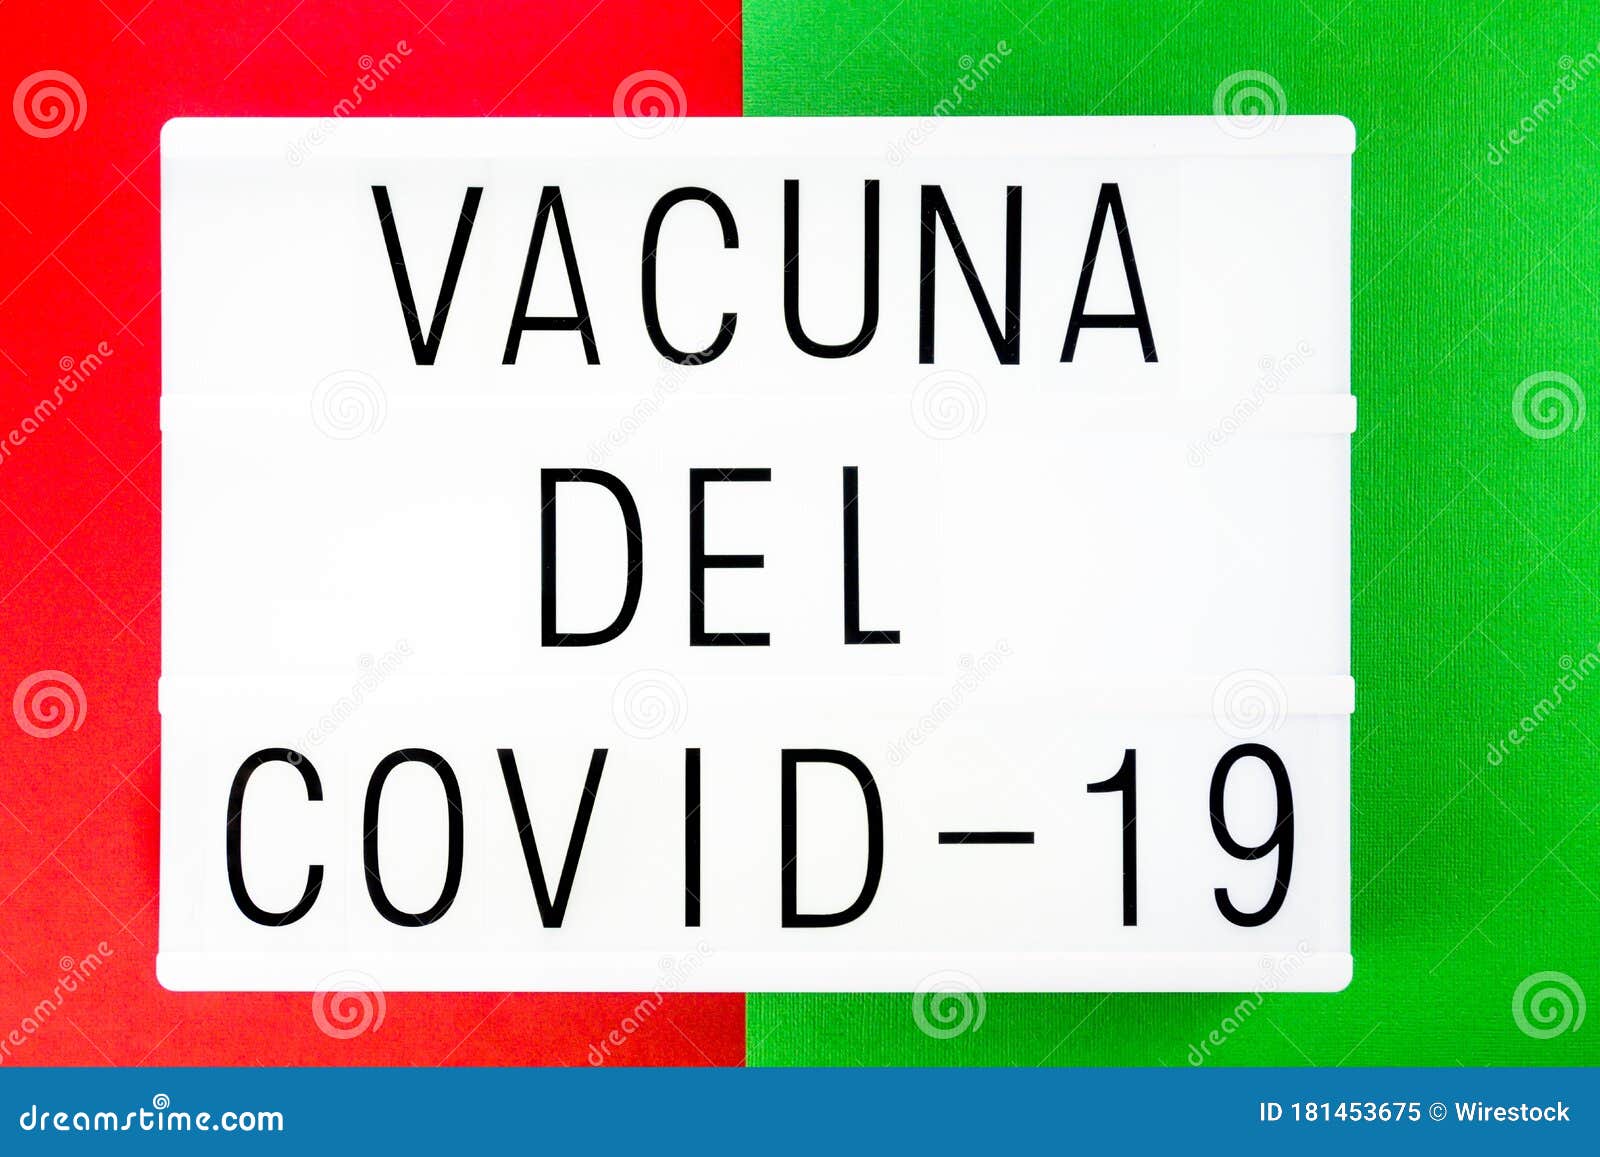 phrase covid-19 vaccine written in spanish, vacuna del covid-19